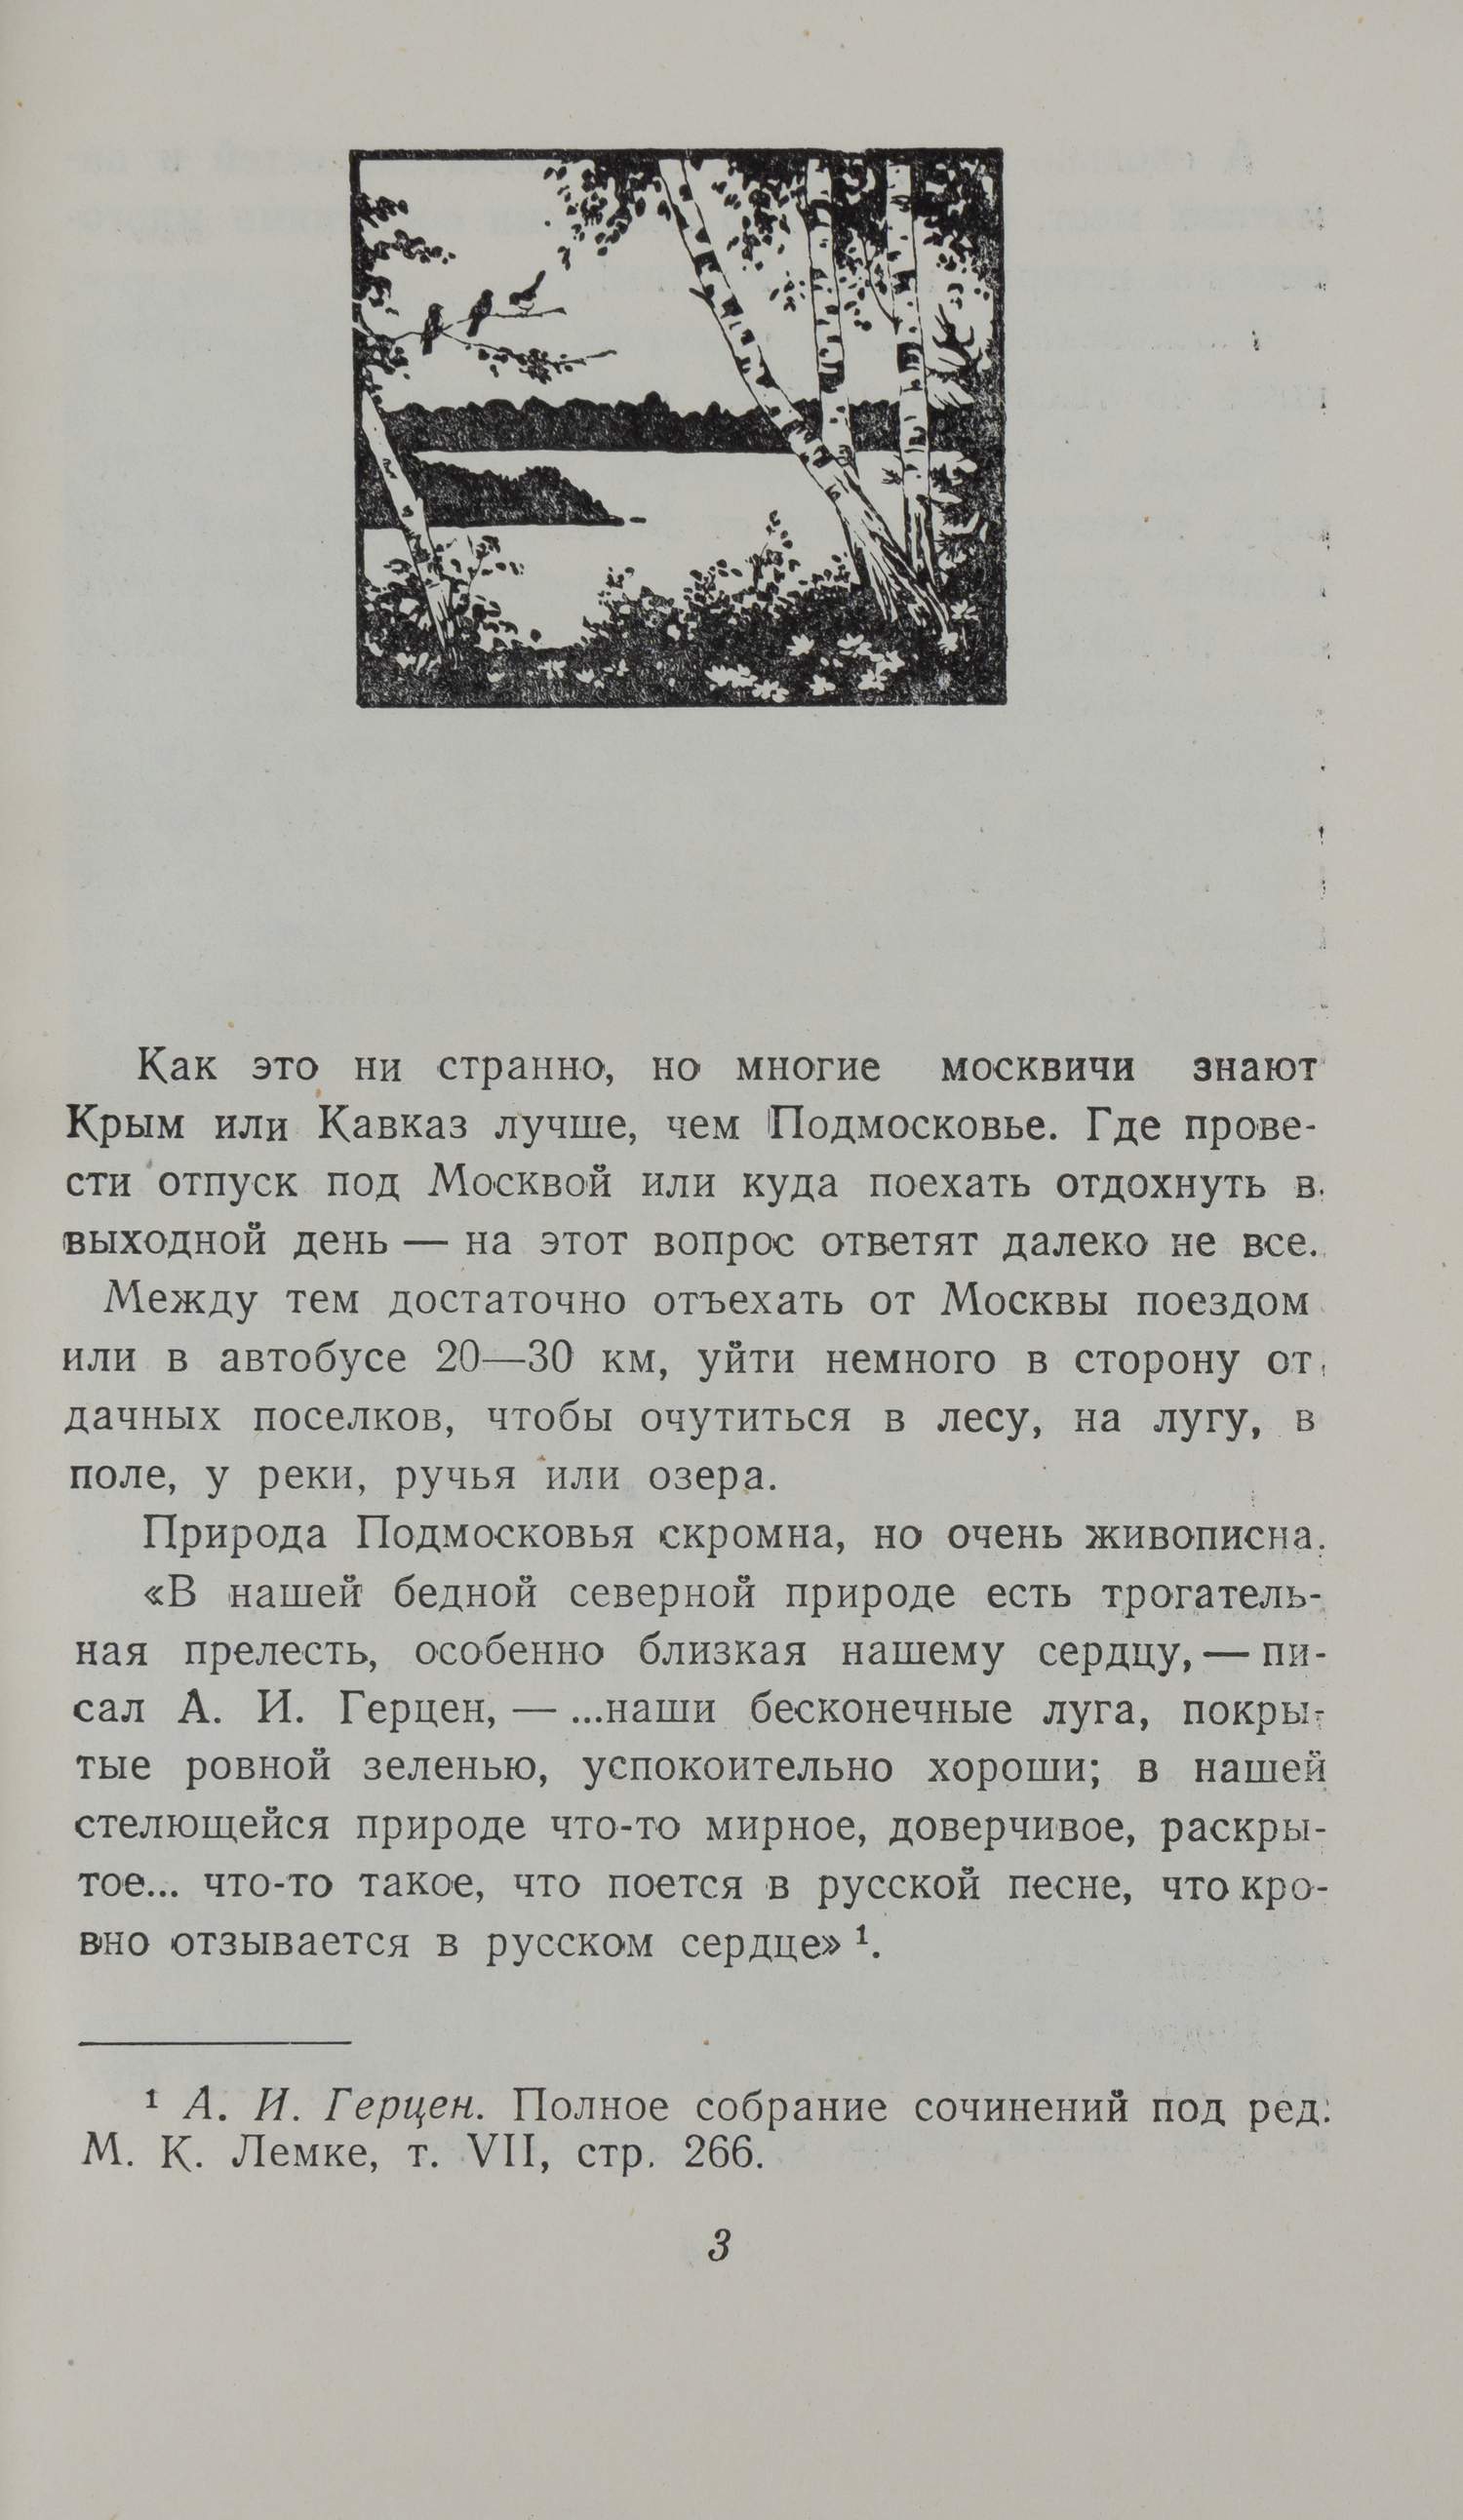 Прогулки по Подмосковью. Краткий справочник (М., 1957).